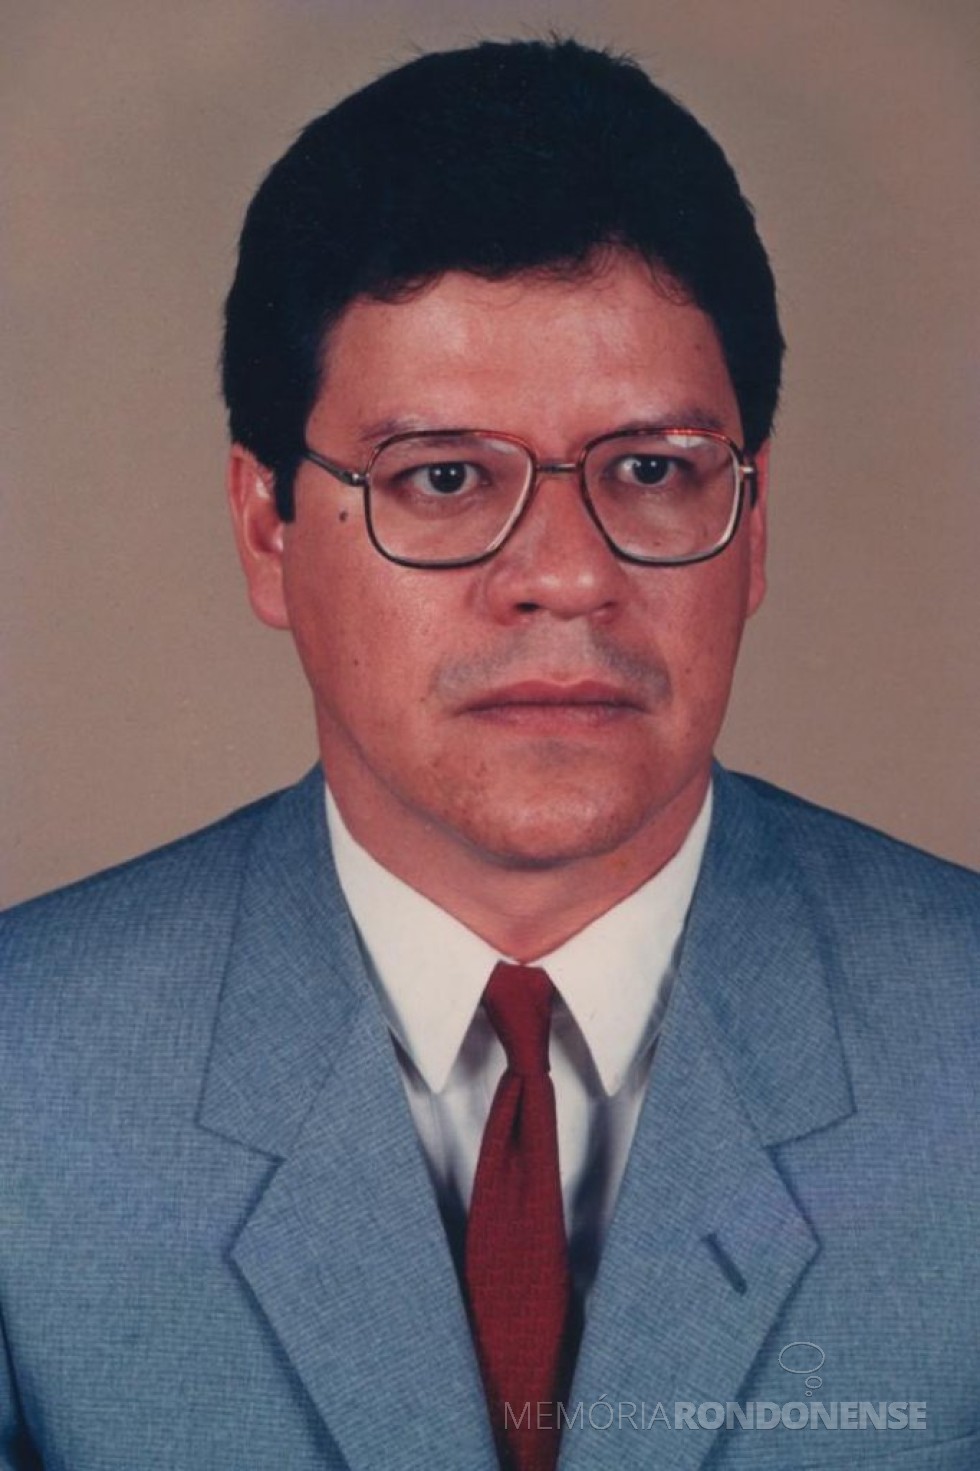 || Médico rondonense Dr. César de Souza Faro, falecido em dezembro de 2006.
Imagem: Acervo Tribuna do Oeste - FOTO 7 -